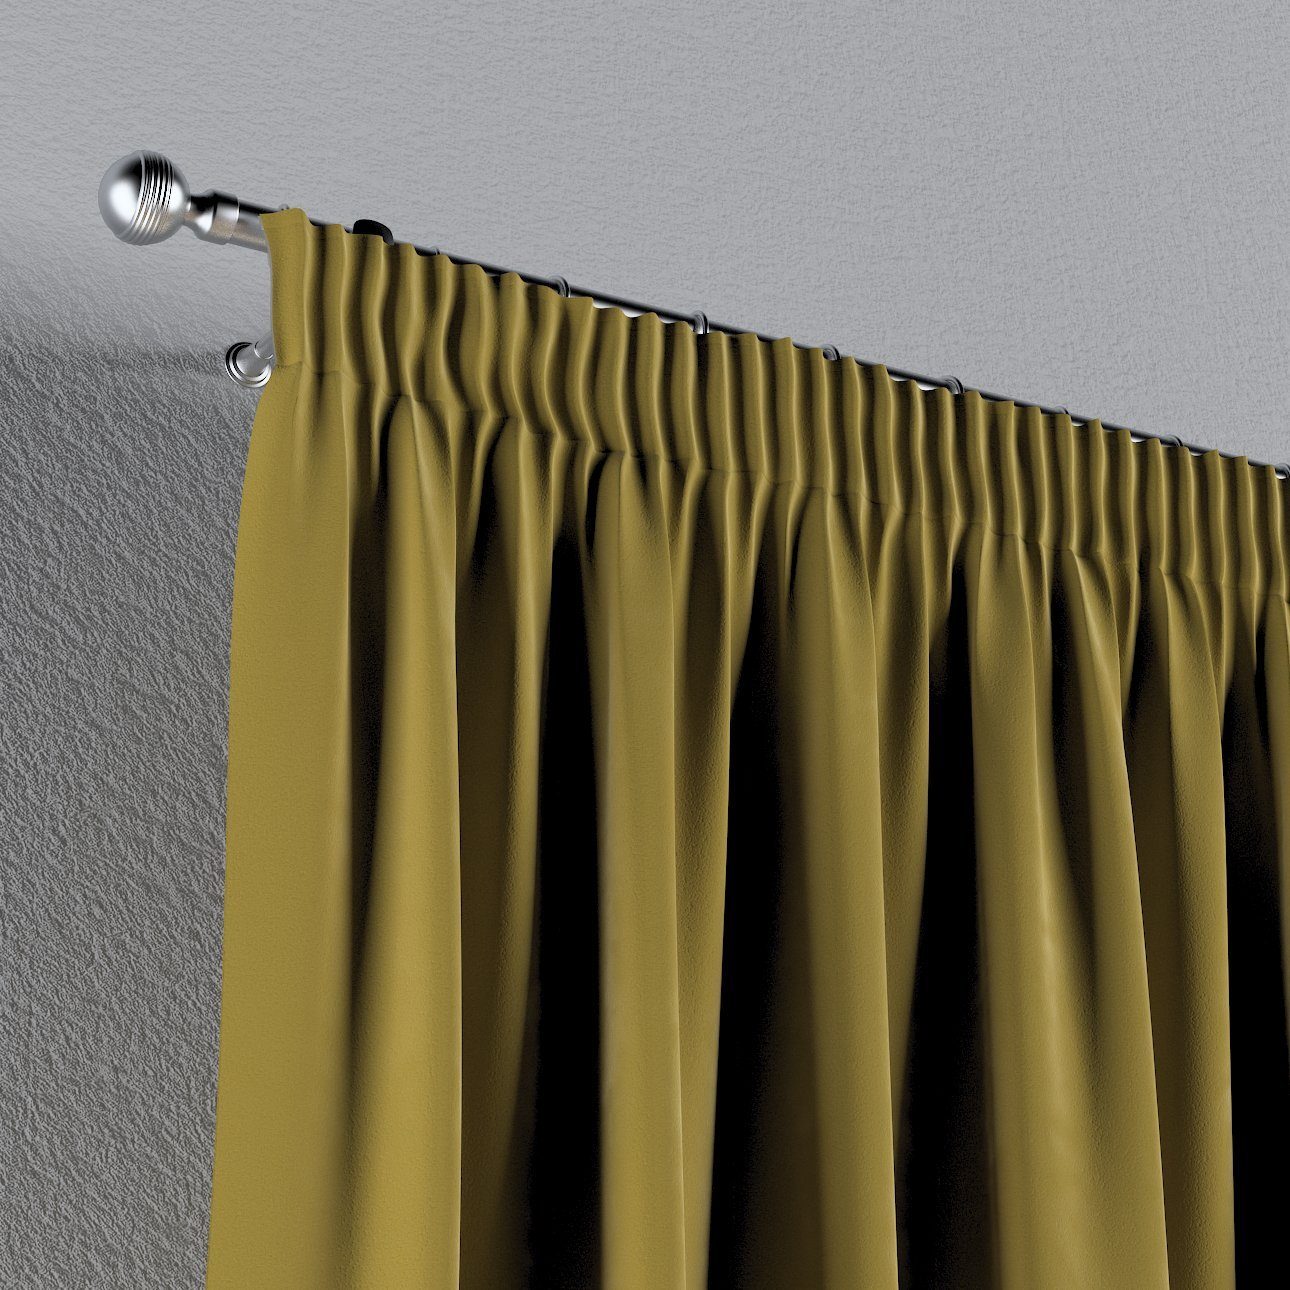 Vorhang Vorhang mit Velvet, cm, Kräuselband olivegrün Dekoria 130x100